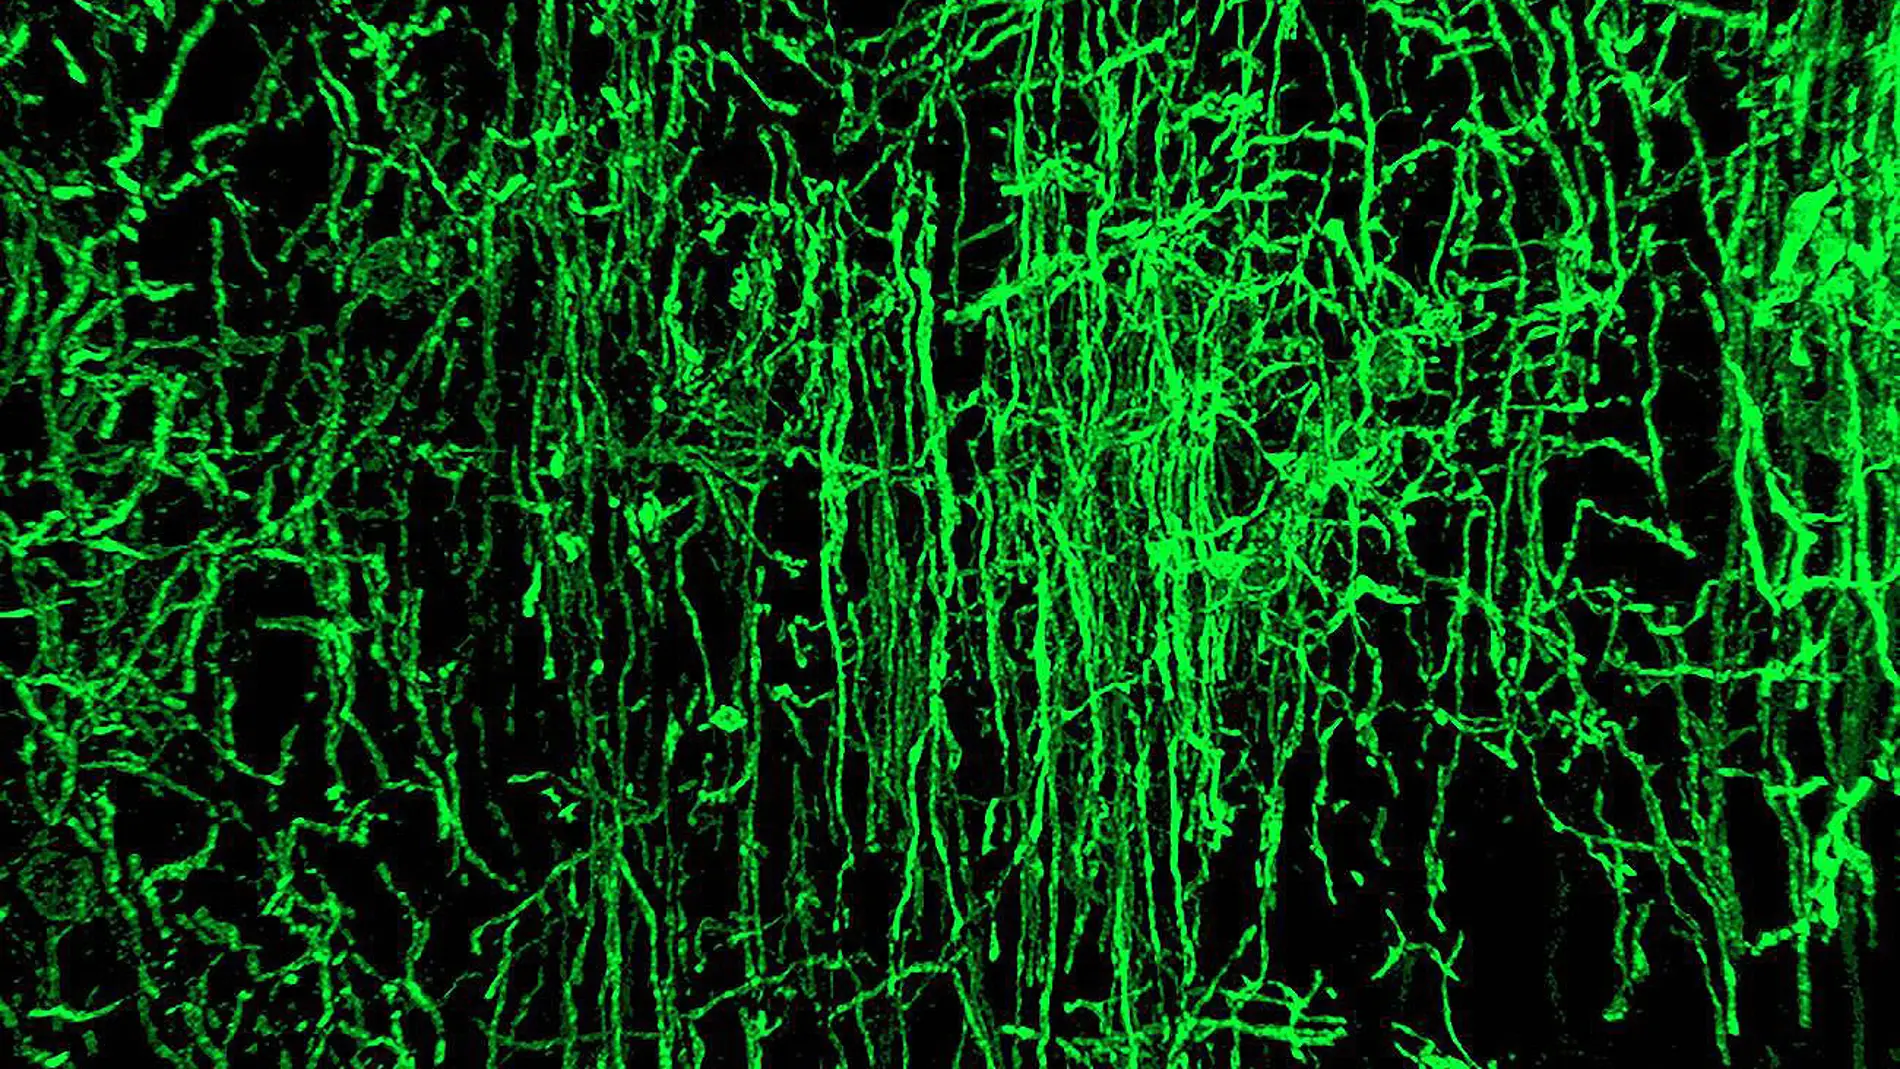 Oligodendrocitos como estos (en verde) se encargan de mielinizar los axones neuronales